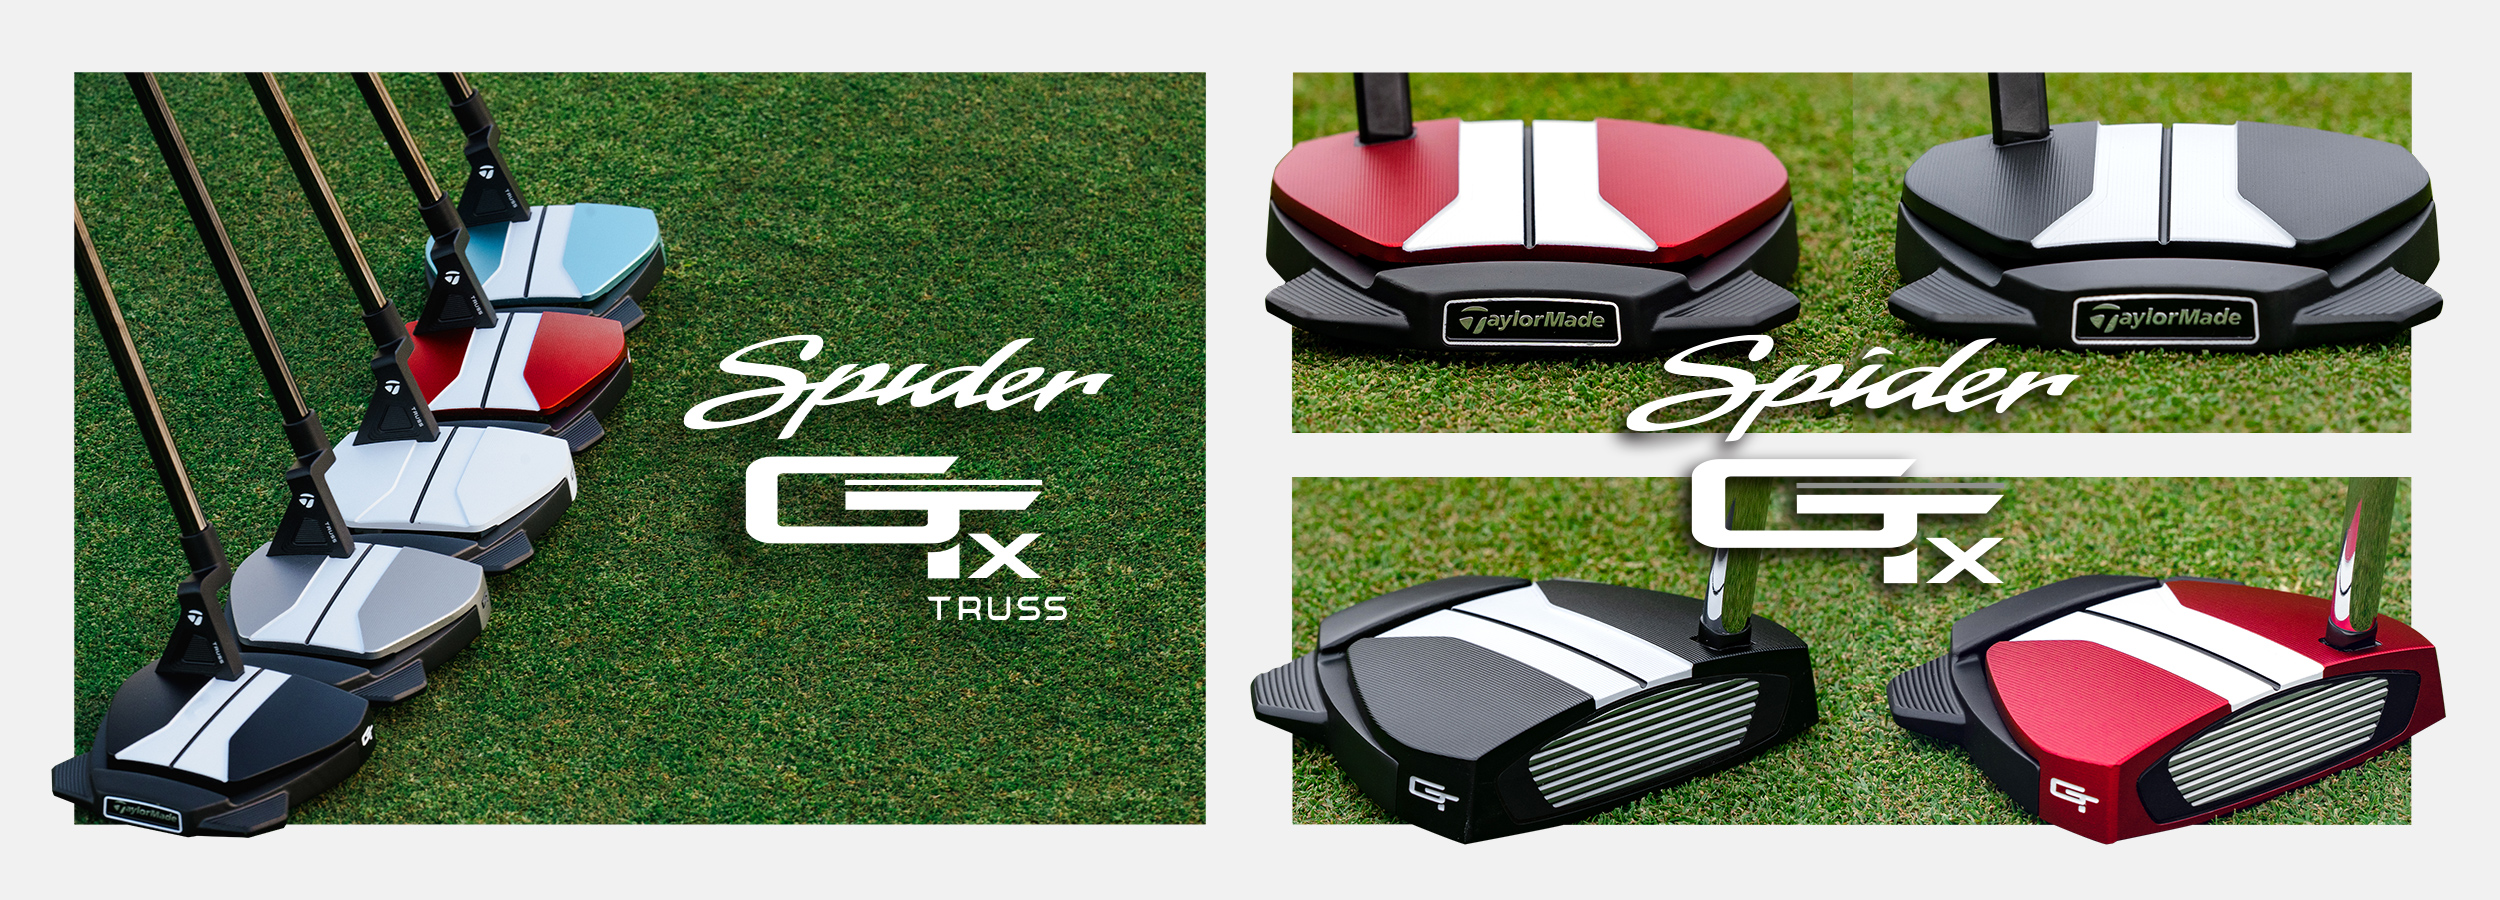 スパイダーGT X ブラック トラスヒール パター | SPIDER GT X BLACK TRUSS | TaylorMade Golf | テーラーメイド  ゴルフ公式サイト